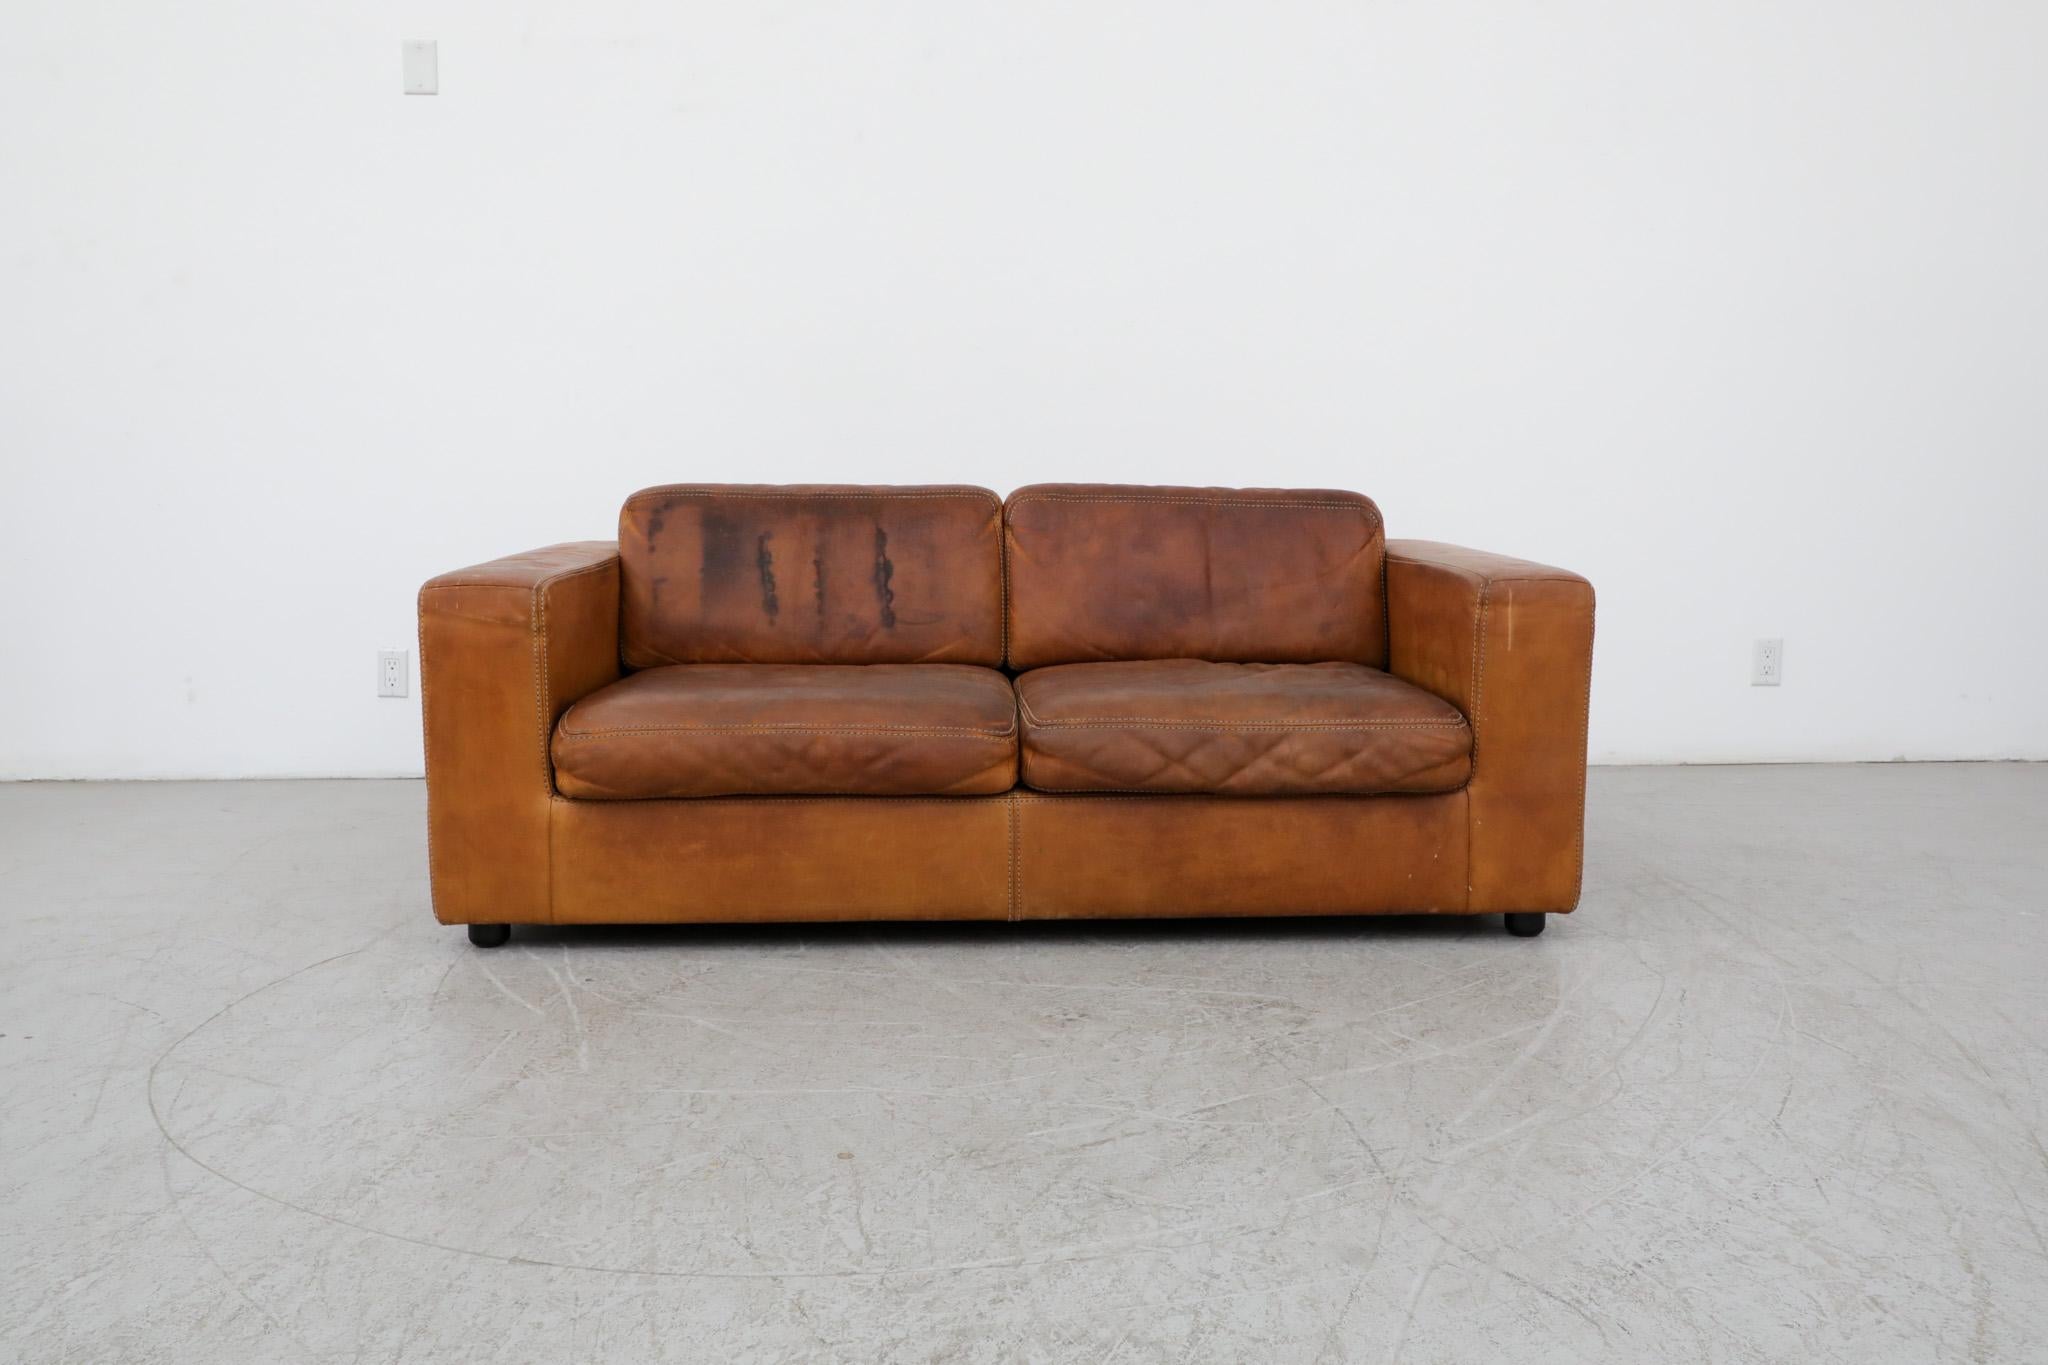 Schönes, zweisitziges Naturledersofa aus der Jahrhundertmitte mit tiefer Patina. Hergestellt von Durlet, Belgien. Dieses bequeme Softform-Sofa sitzt niedrig und besteht aus dickem Leder mit großen Nähten. In gut geliebten Originalzustand mit einigen